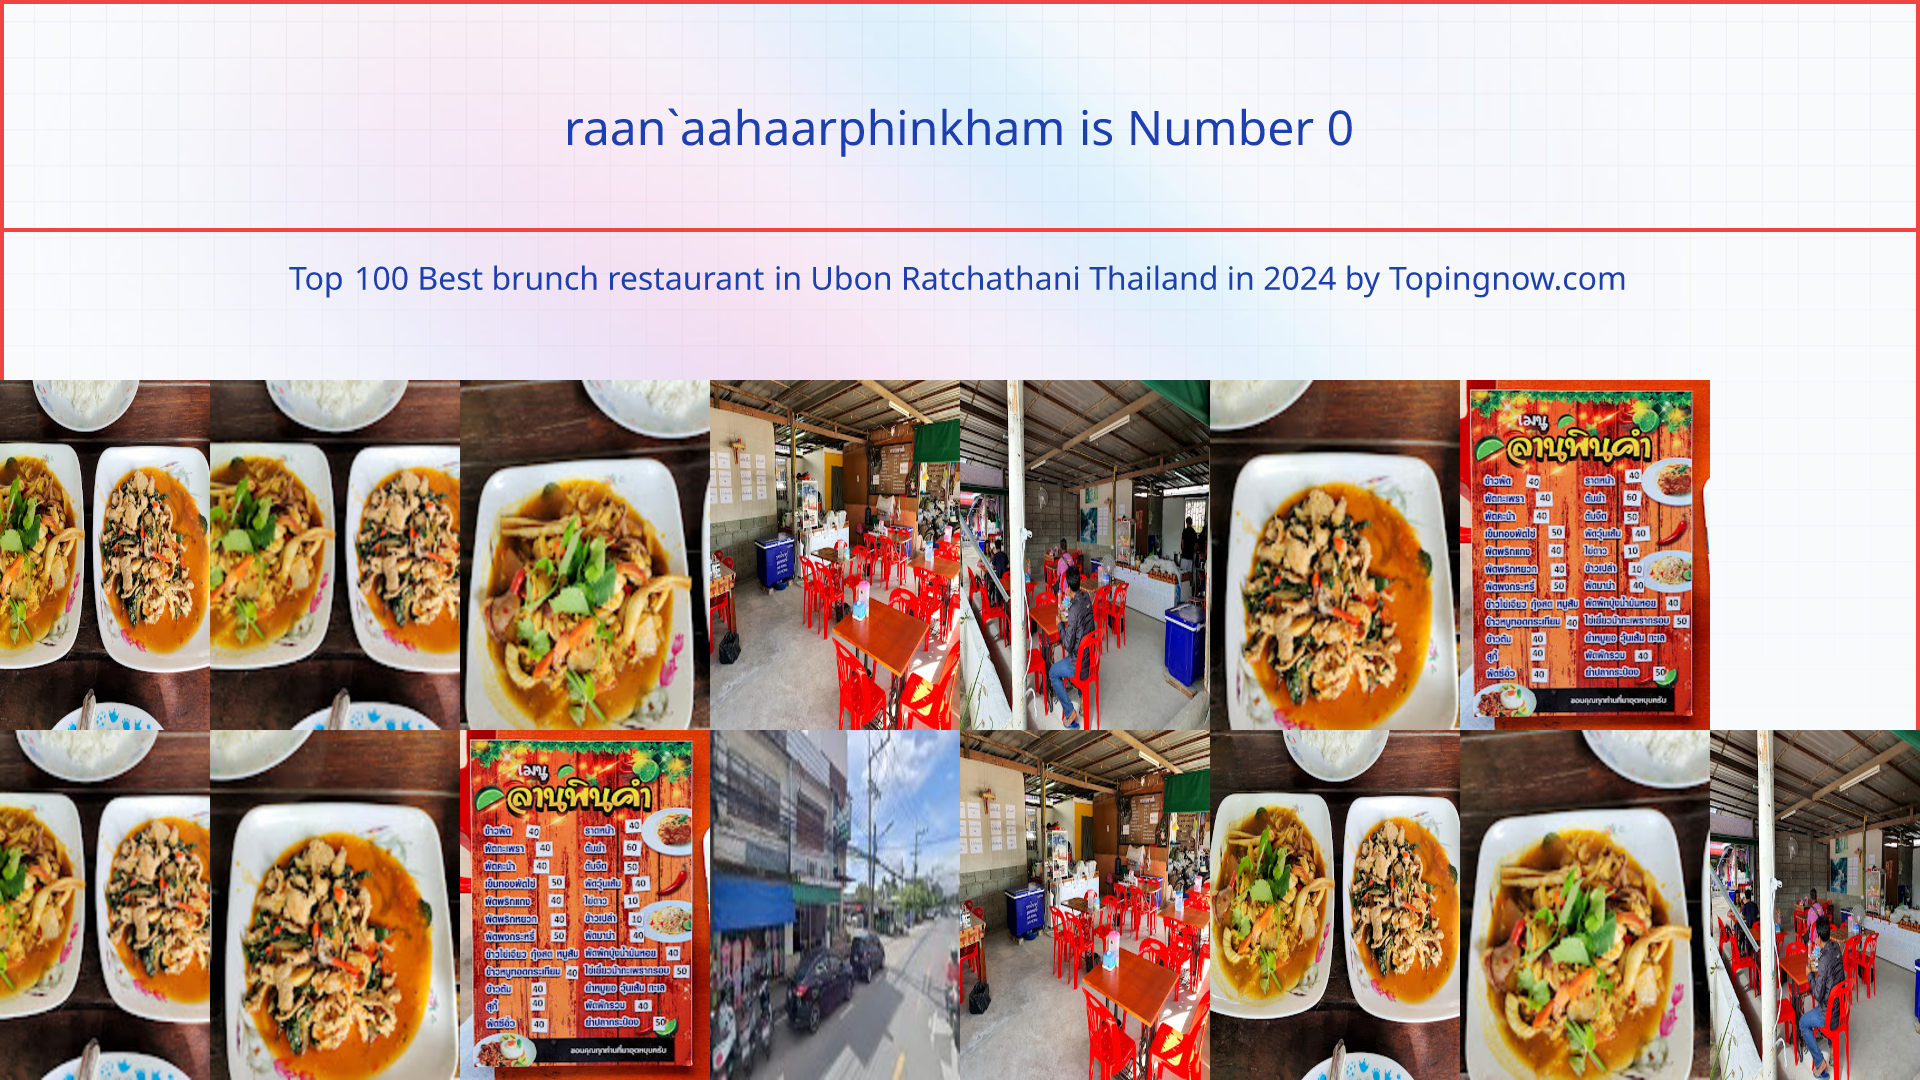 raan`aahaarphinkham: Top 100 Best brunch restaurant in Ubon Ratchathani Thailand in 2024